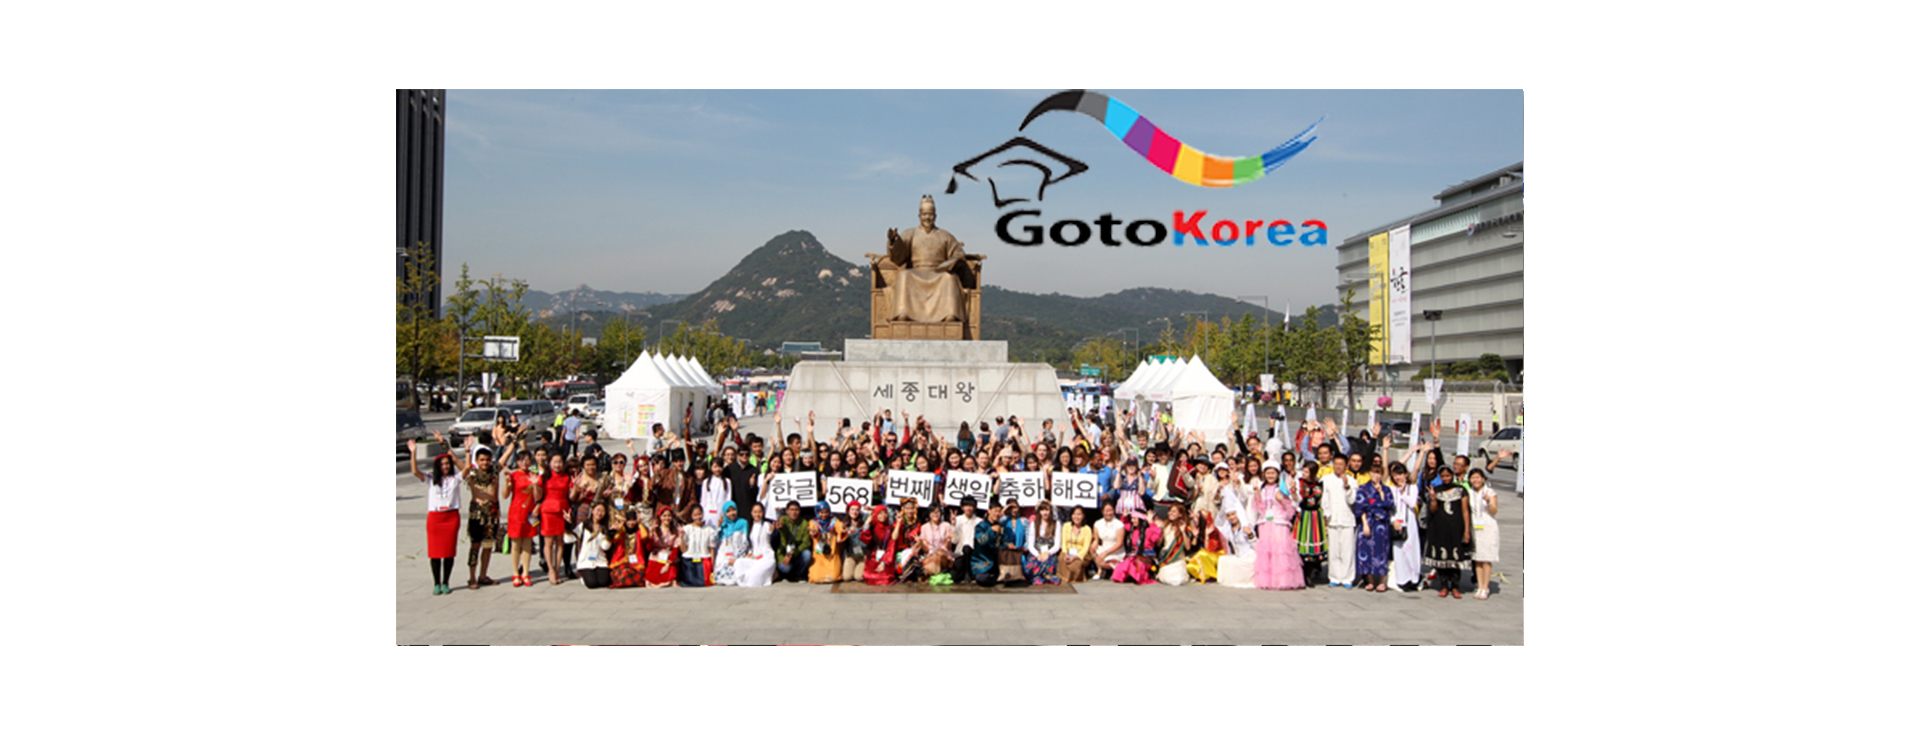 وضعیت اجتماعی کره جنوبی